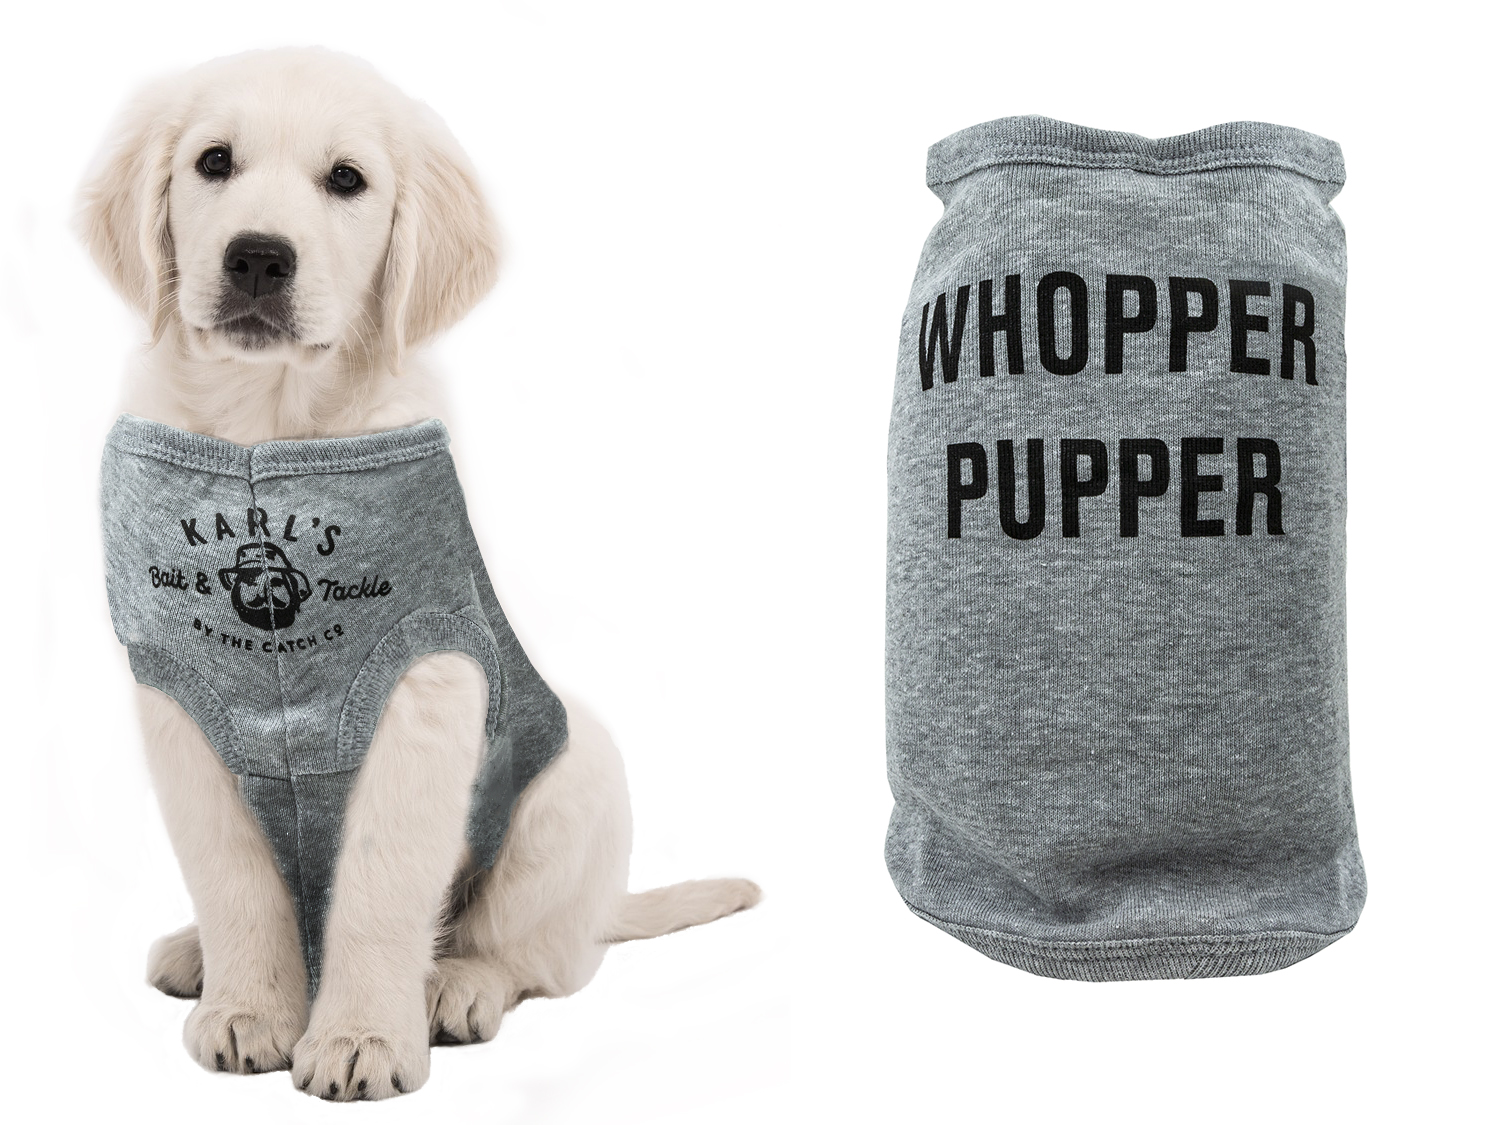 Whopper Pupper Dog Shirt